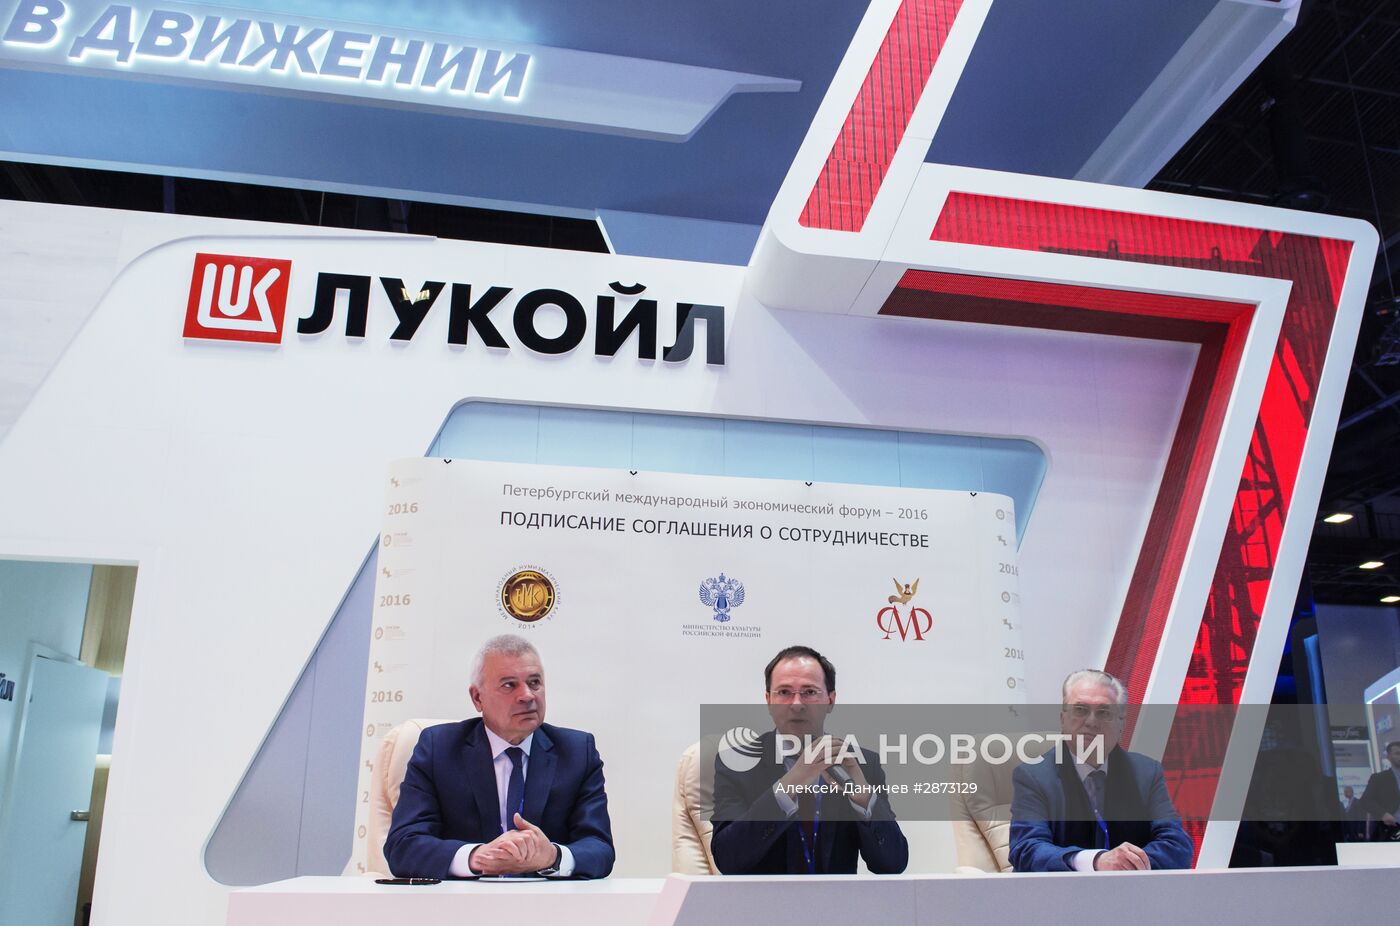 Подписание соглашения между компанией "Лукойл" и министерством культуры РФ